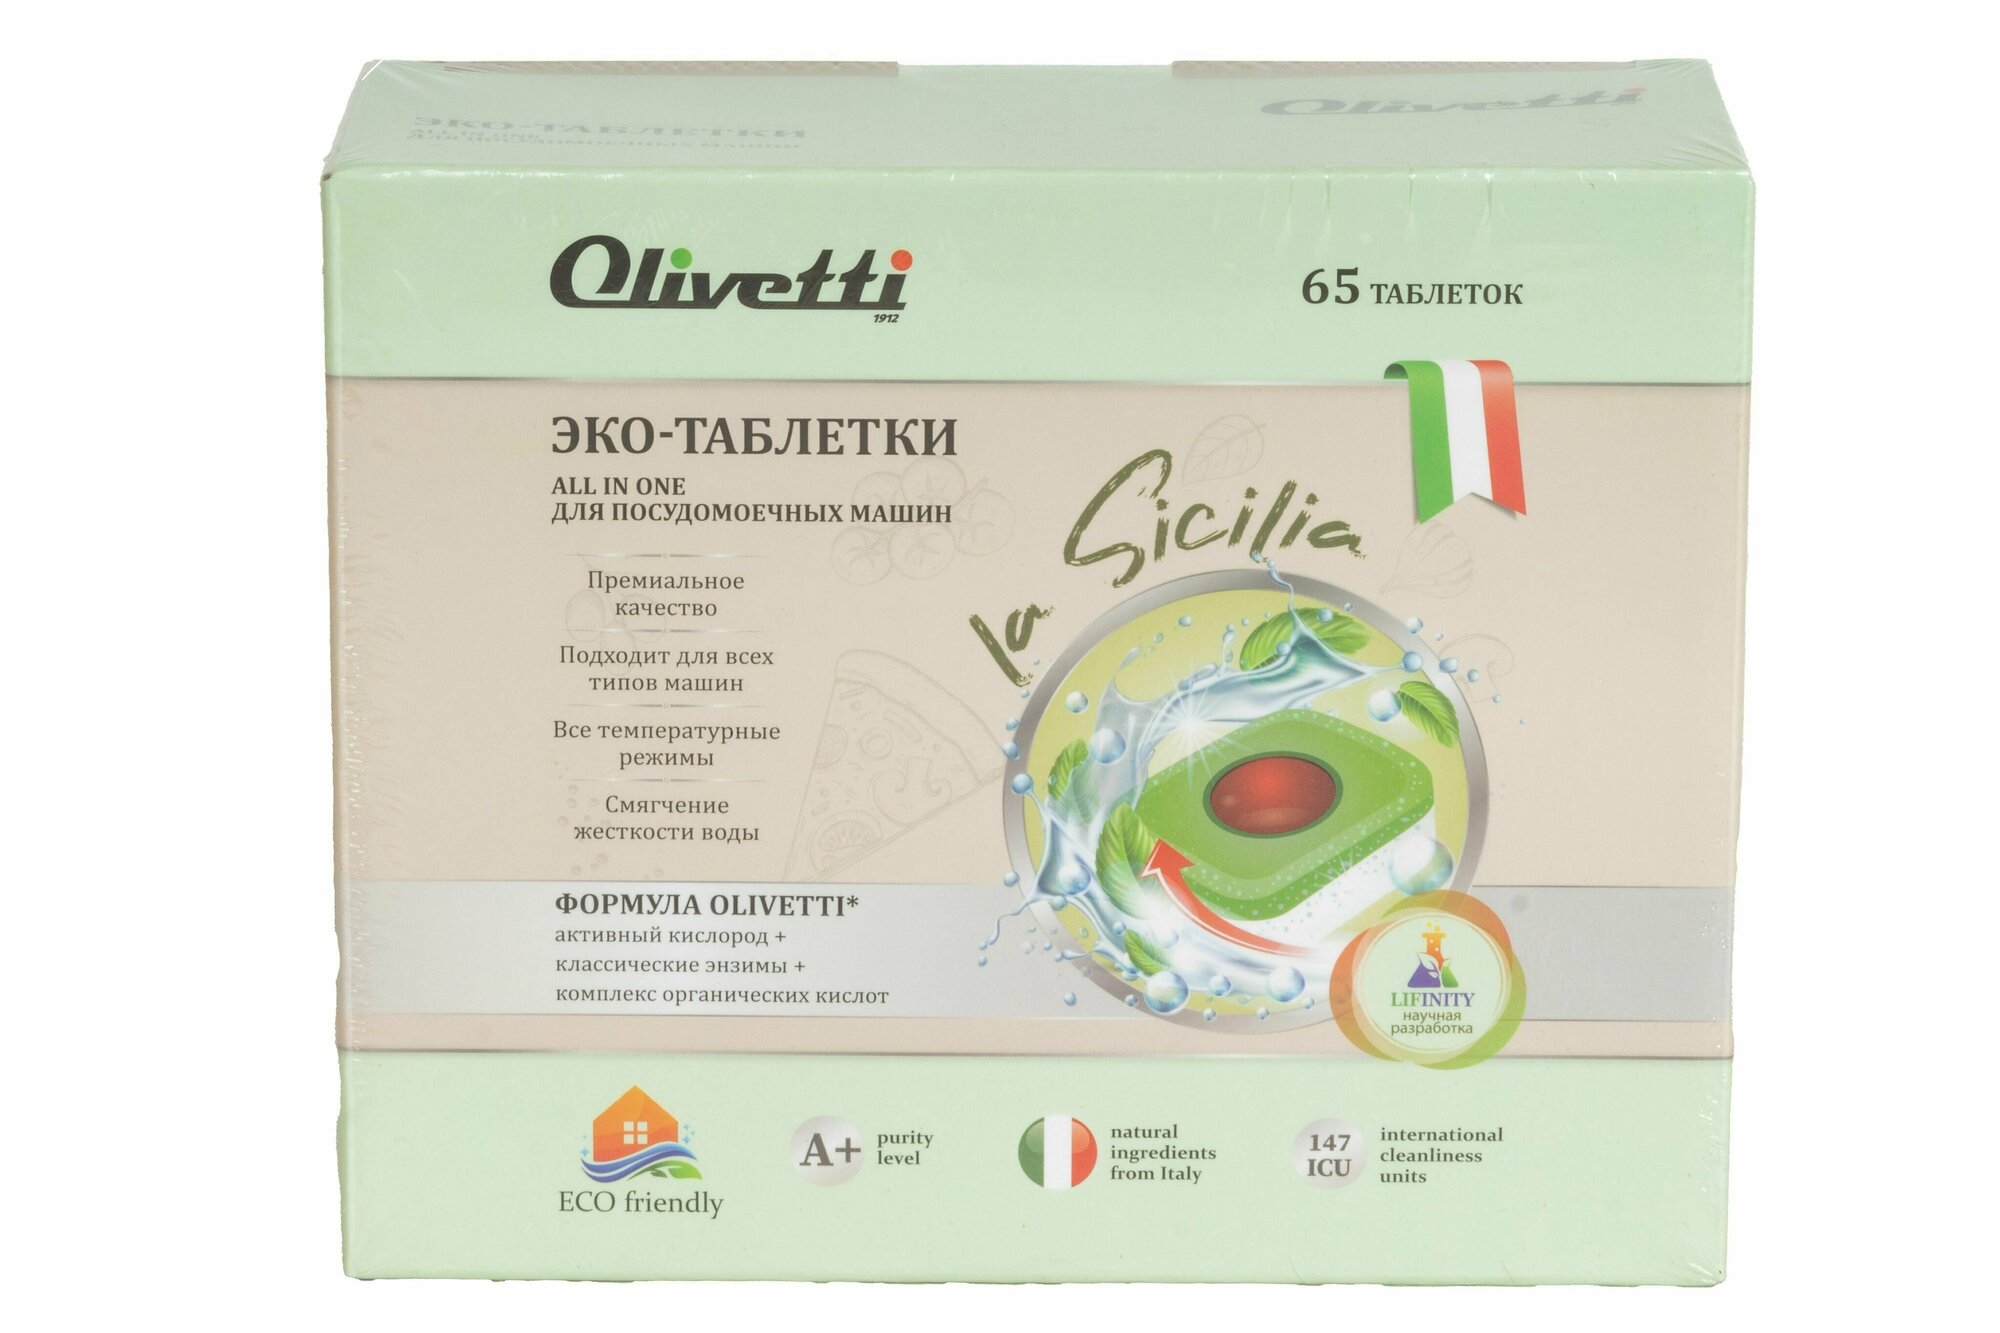 Olivetti Эко-таблетки 3в1 для посудомоечных машин 65 штук / премиум качество / бесфосфатные без пятен и разводов натуральные компоненты из Италии